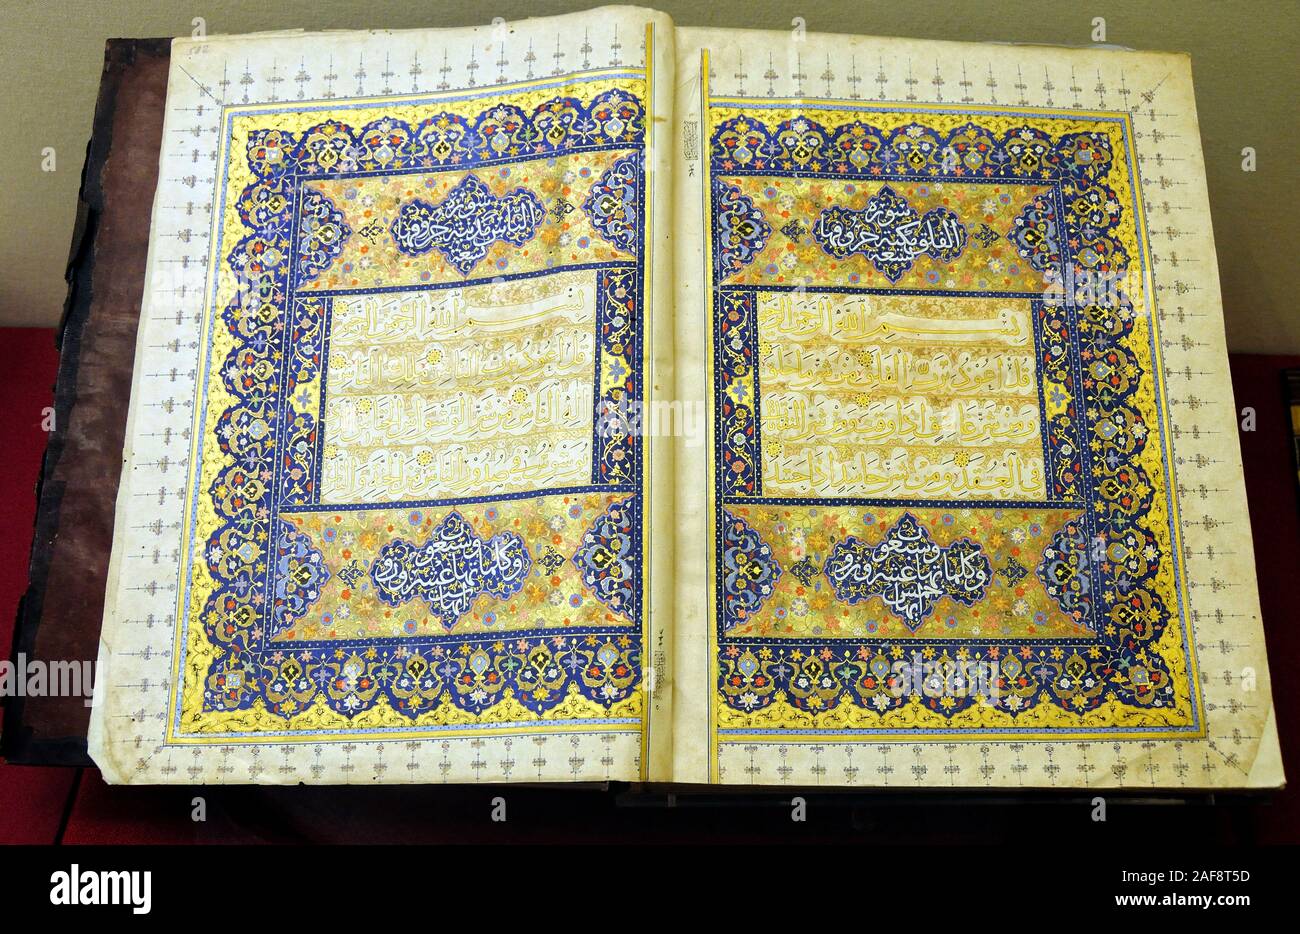 Der Qur'an. Persien, 16. Jahrhundert. Kalligraphie von Abdülvahab Giyaseddin bin. Museum des Alten Orients, Istanbul. Türkei Stockfoto